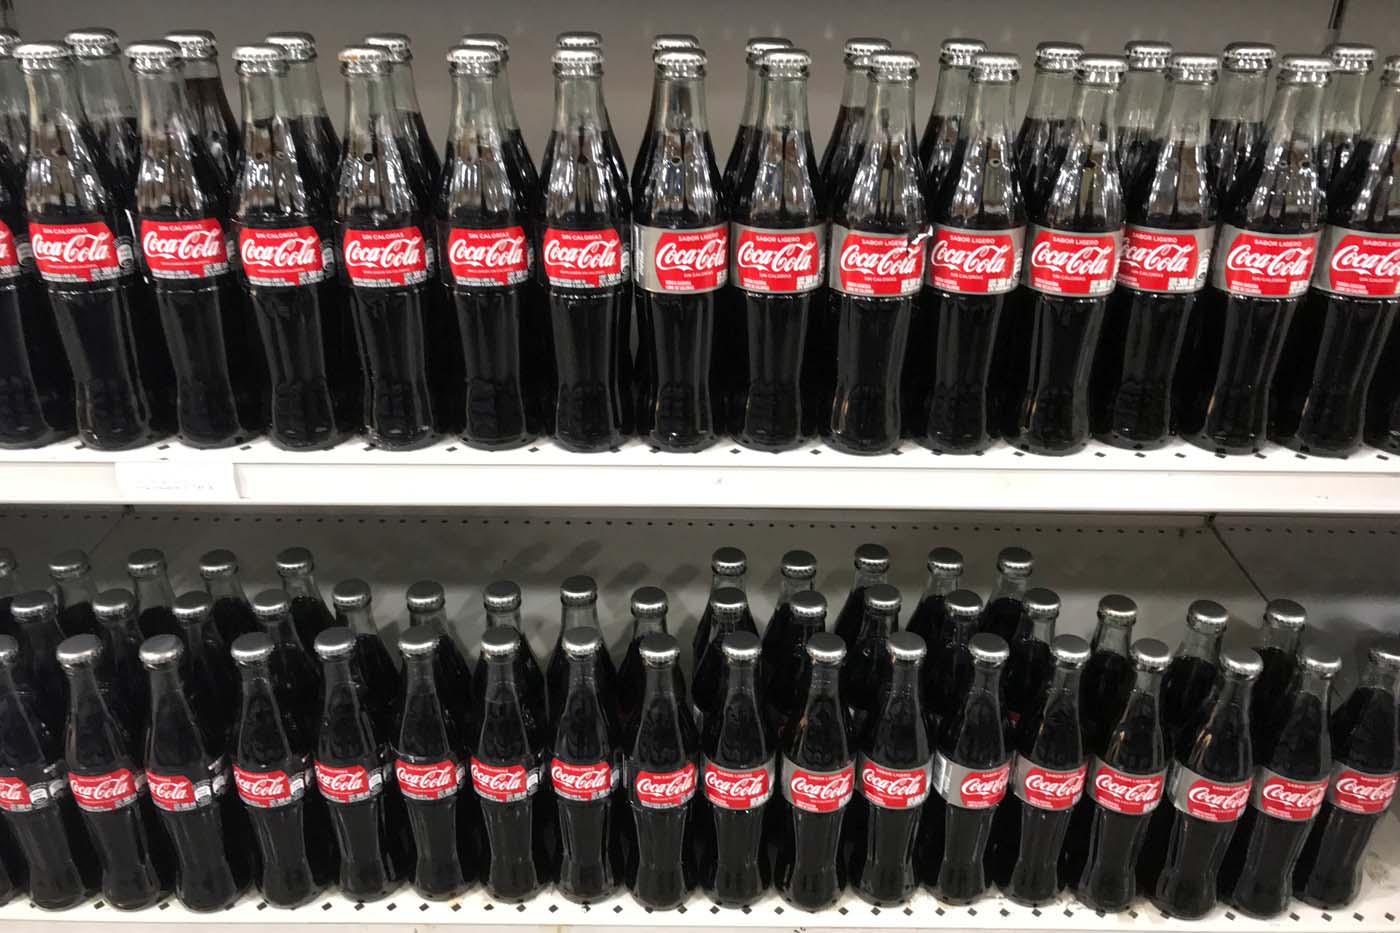 El Museo de Coca-Cola en Atlanta reabre tras falsa amenaza de bomba